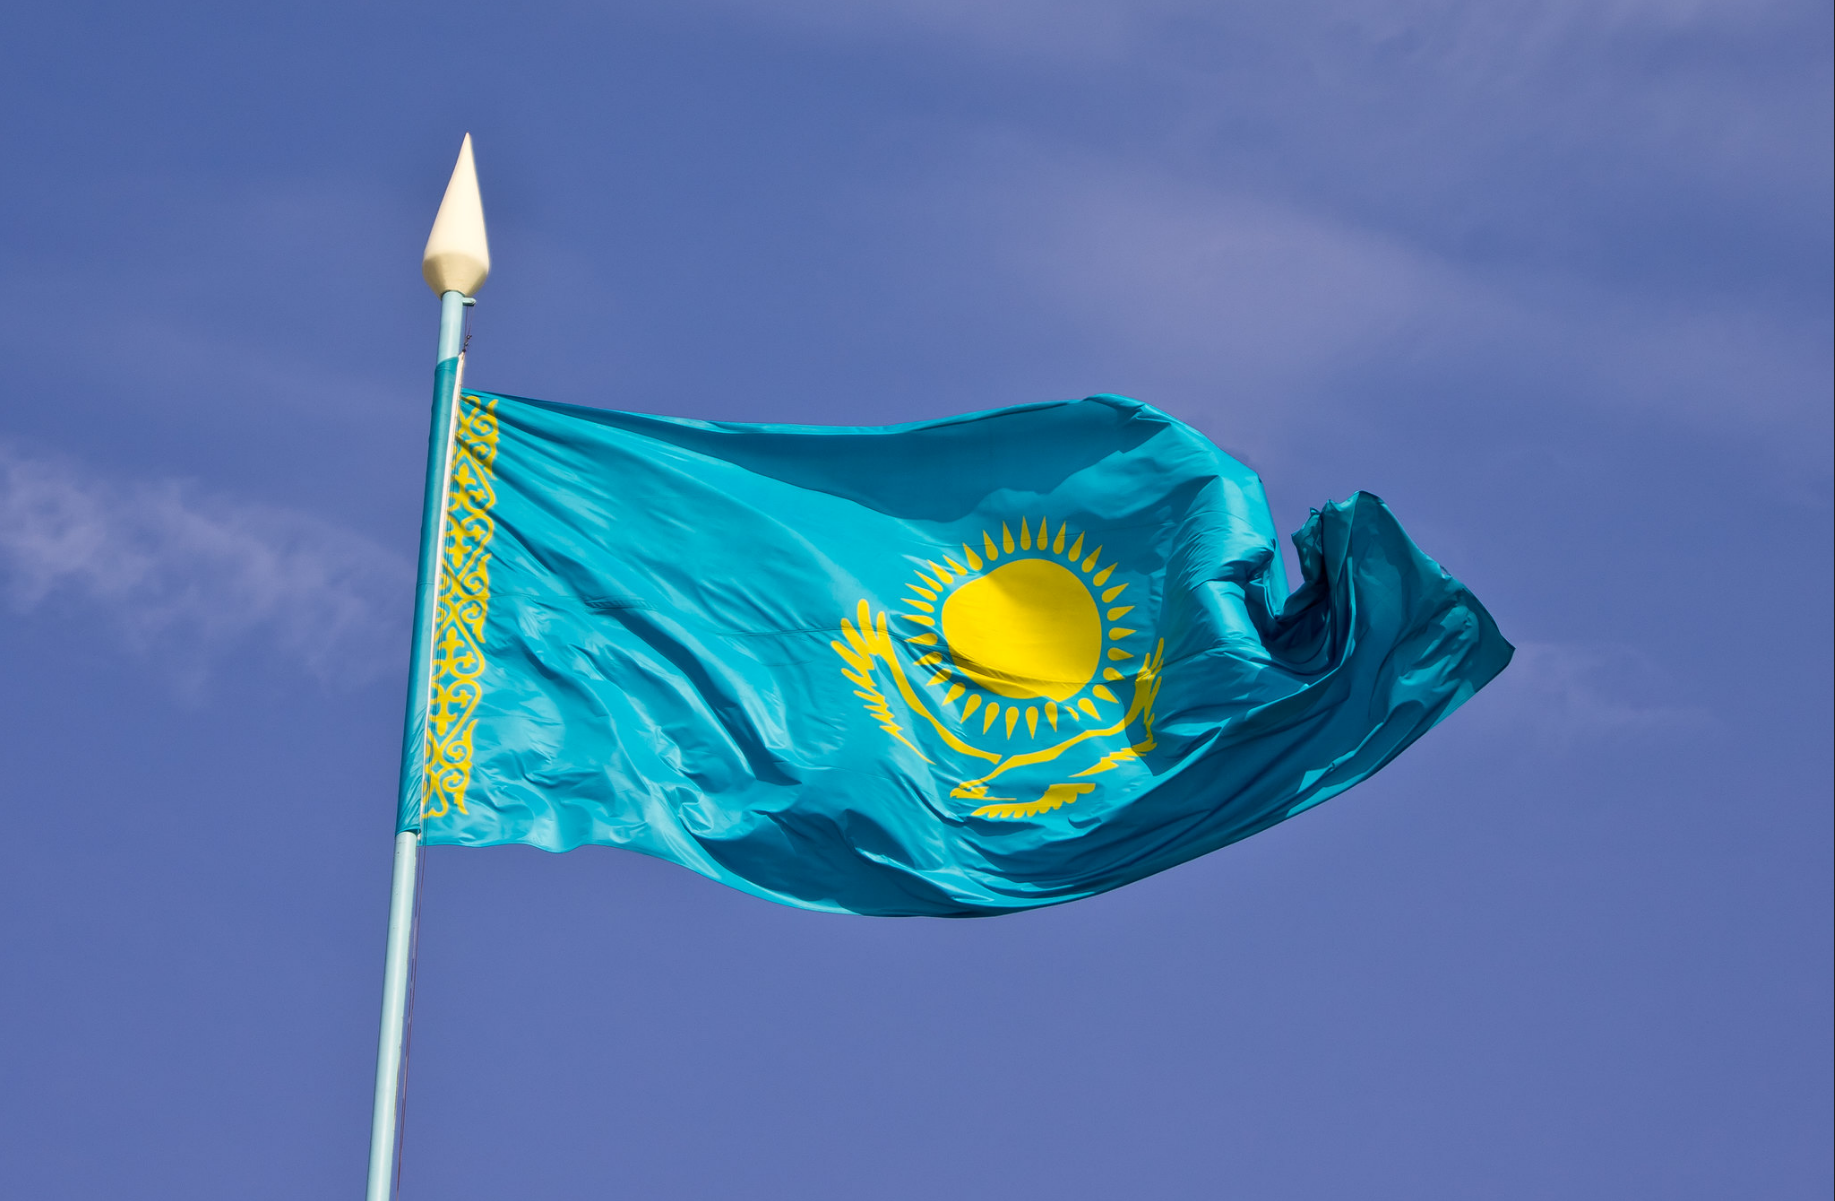 Ղազախստանը պատրաստ է բանակցության հարթակ տրամադրել ոչ միայն ՀՀ-ին ու Ադրբեջանին, այլև ՌԴ-ին և Ուկրաինային